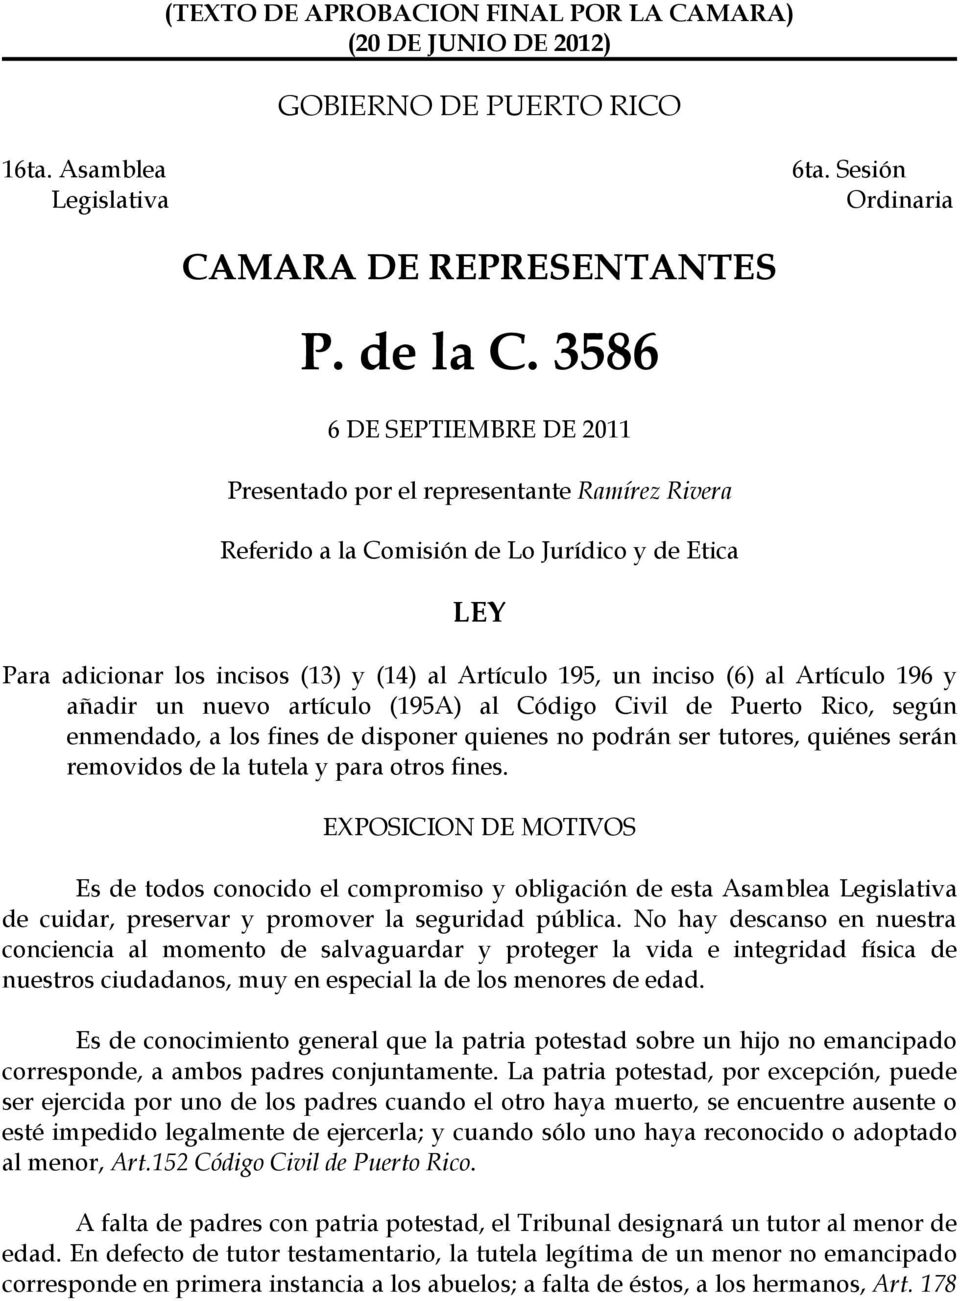 al Artículo 196 y añadir un nuevo artículo (195A) al Código Civil de Puerto Rico, según enmendado, a los fines de disponer quienes no podrán ser tutores, quiénes serán removidos de la tutela y para